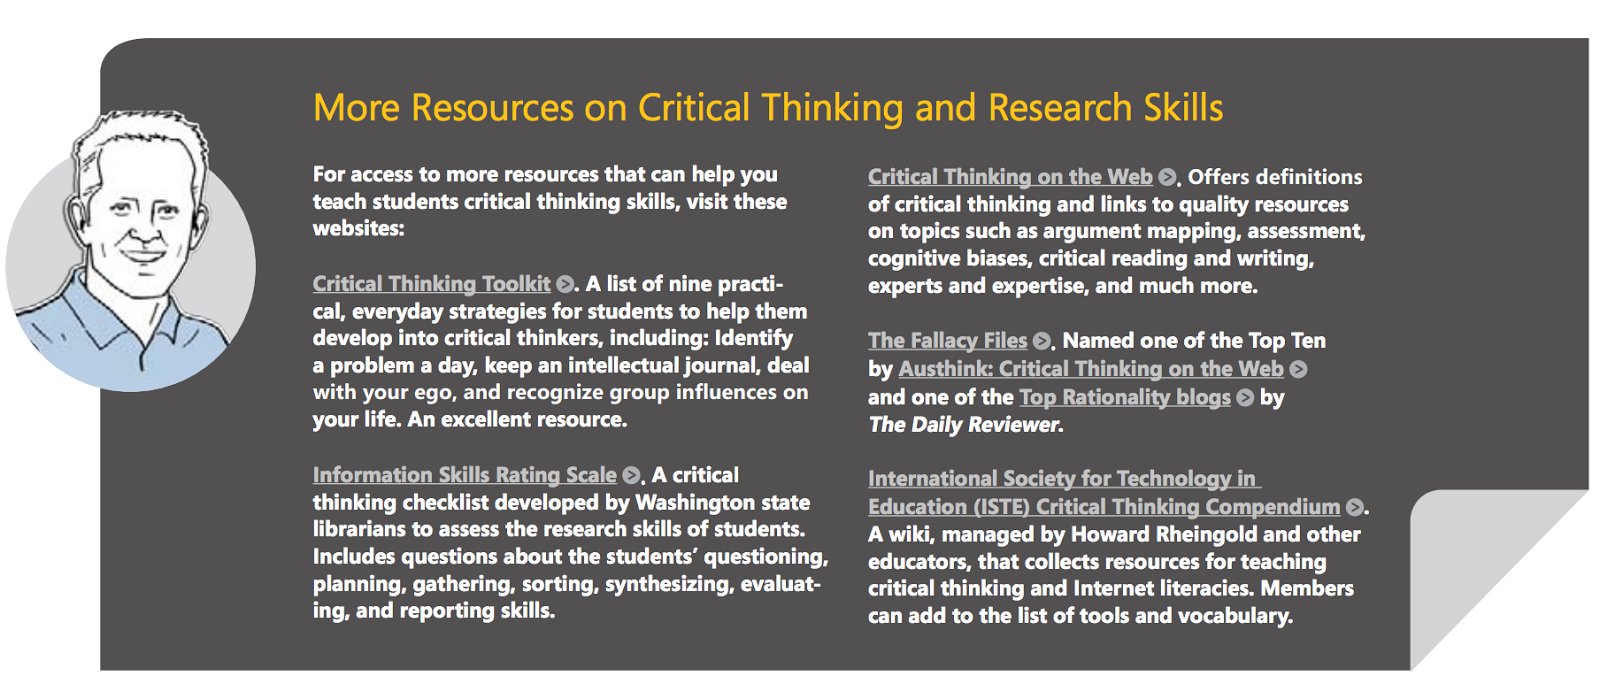 Enhancing critical thinking skills